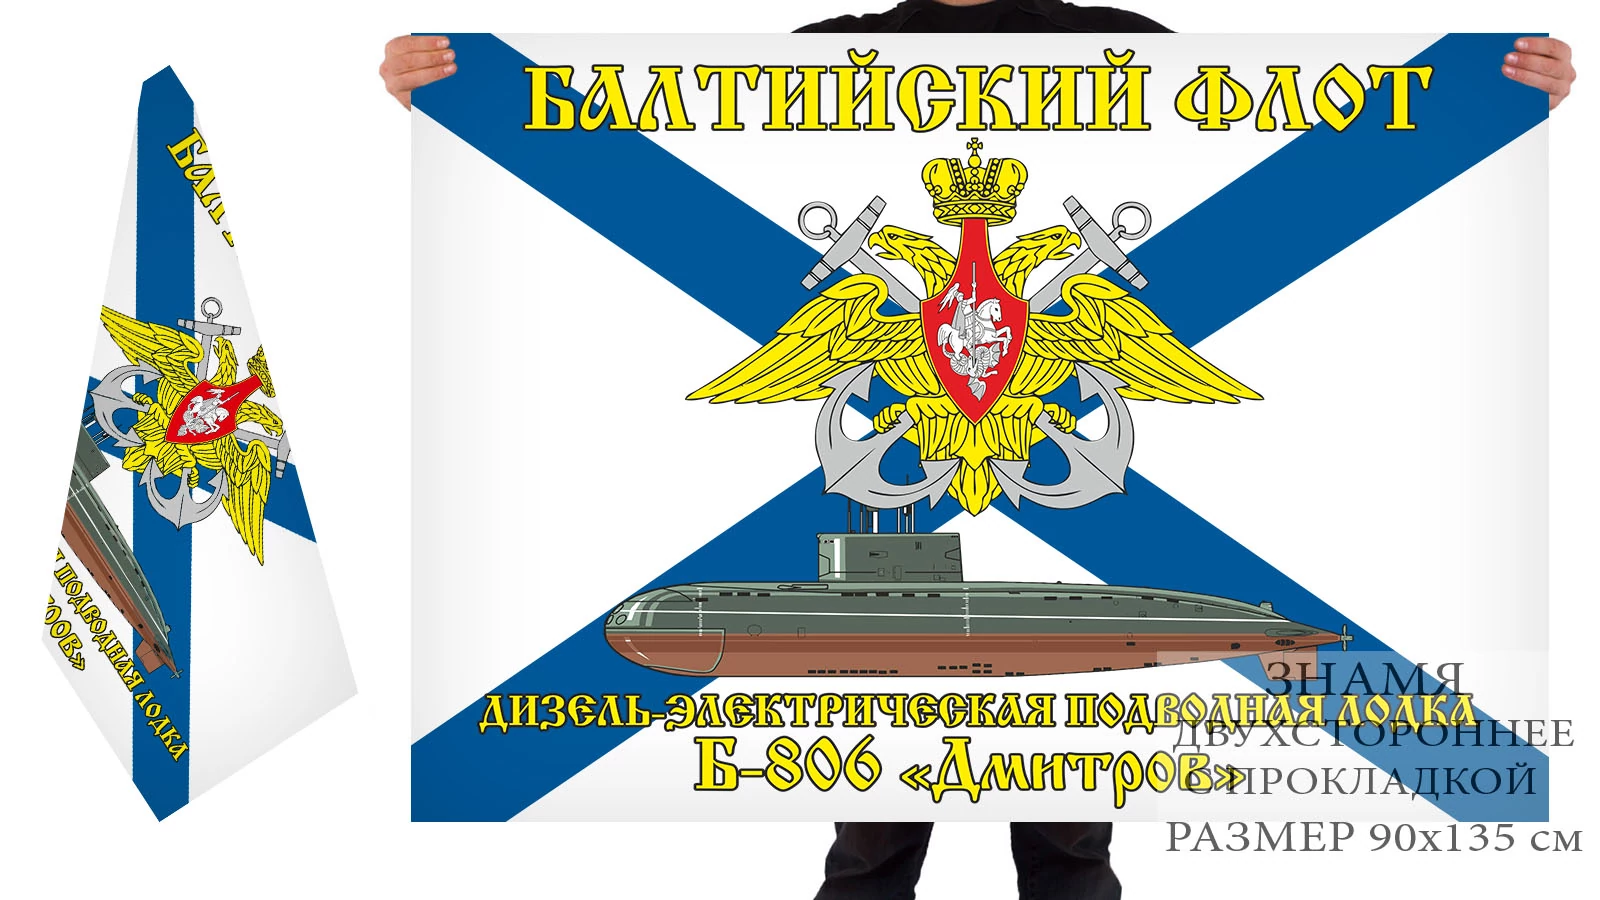 Двусторонний флаг ДЭПЛ Б-806 "Дмитров"